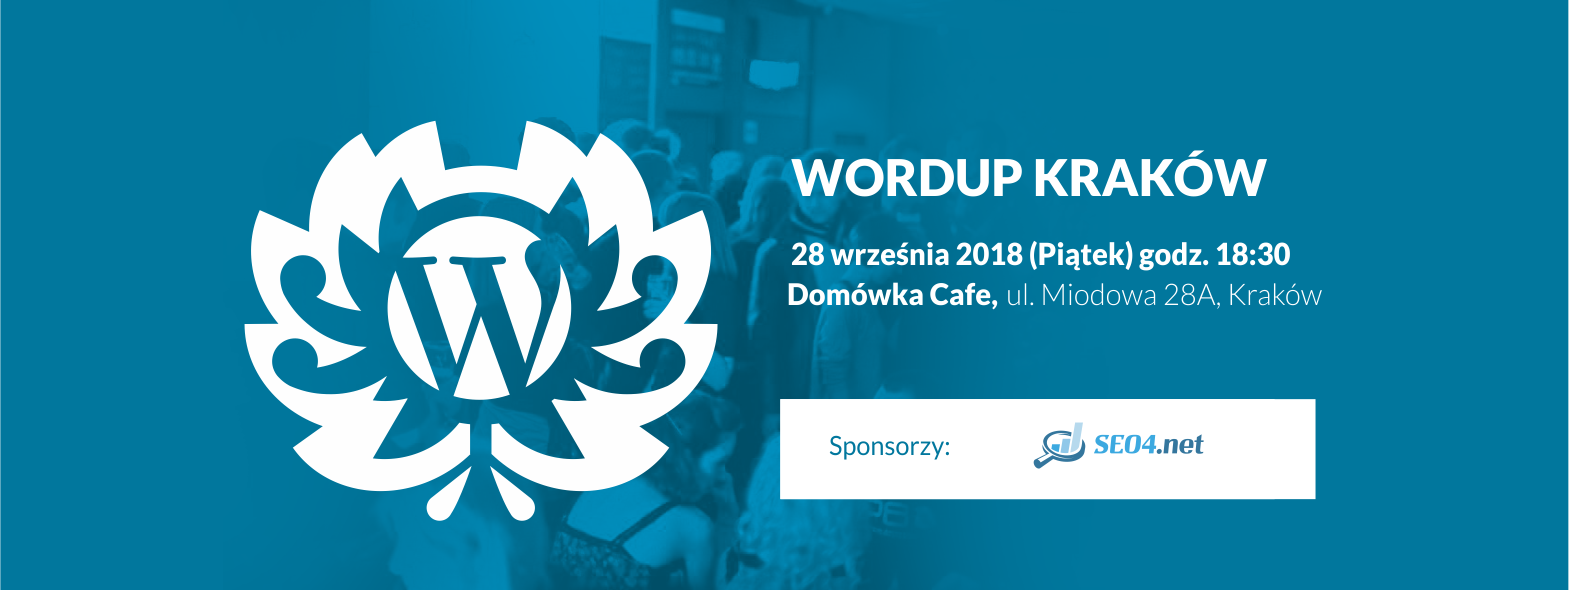 wordup-krakow-jesien-2018